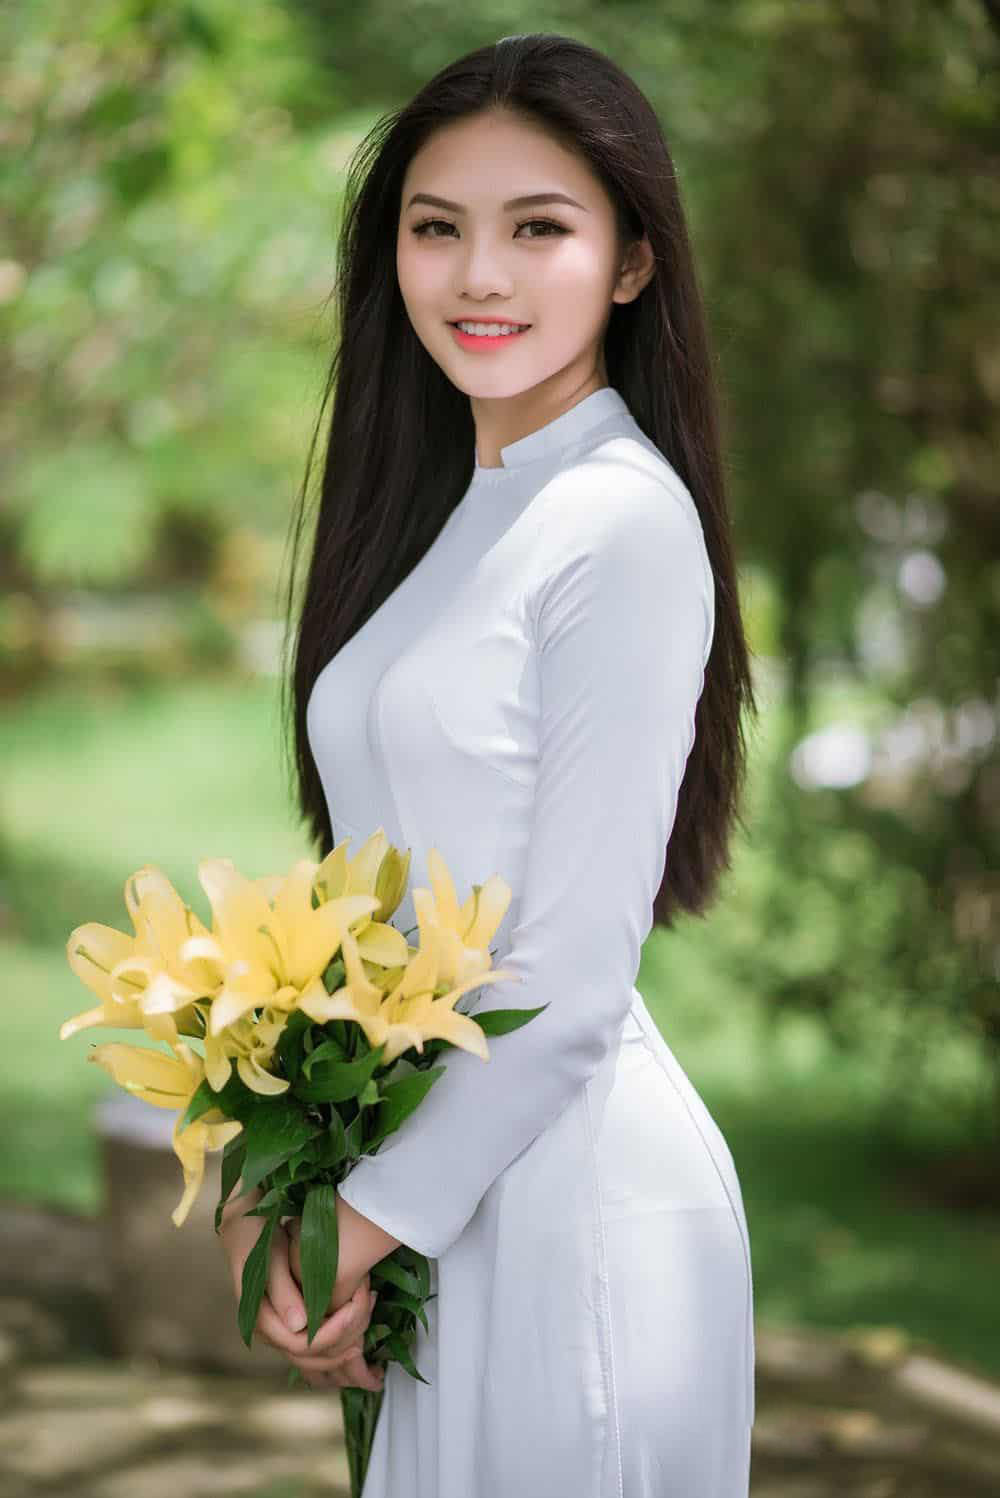 Hình ảnh cô gái xinh đẹp trong tà áo dài và hoa